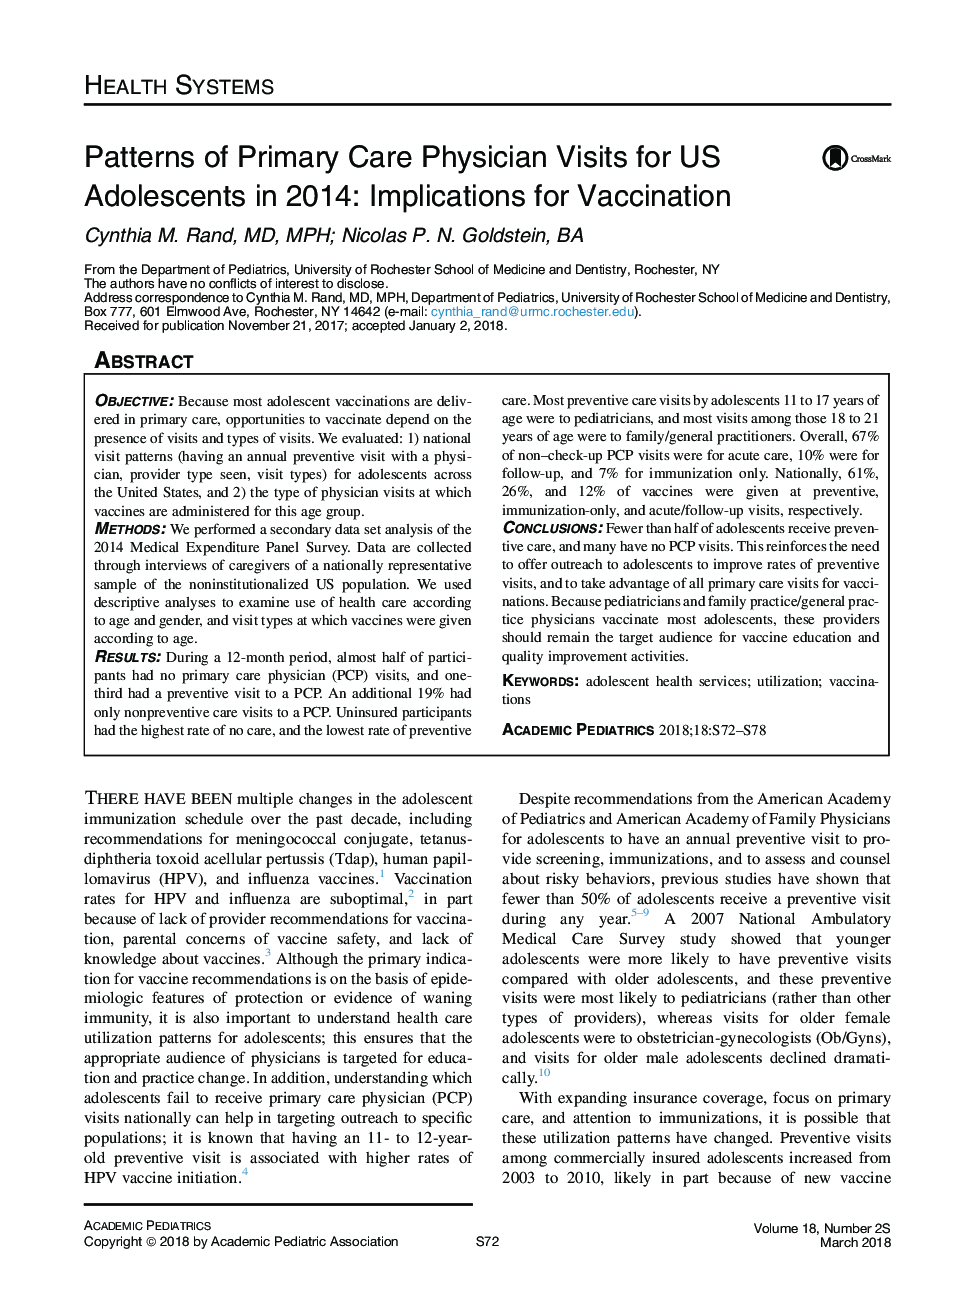 الگوهای مراقبت های اولیه مراقبت از نوجوانان ایالات متحده در سال 2014: پیامدهای واکسیناسیون 